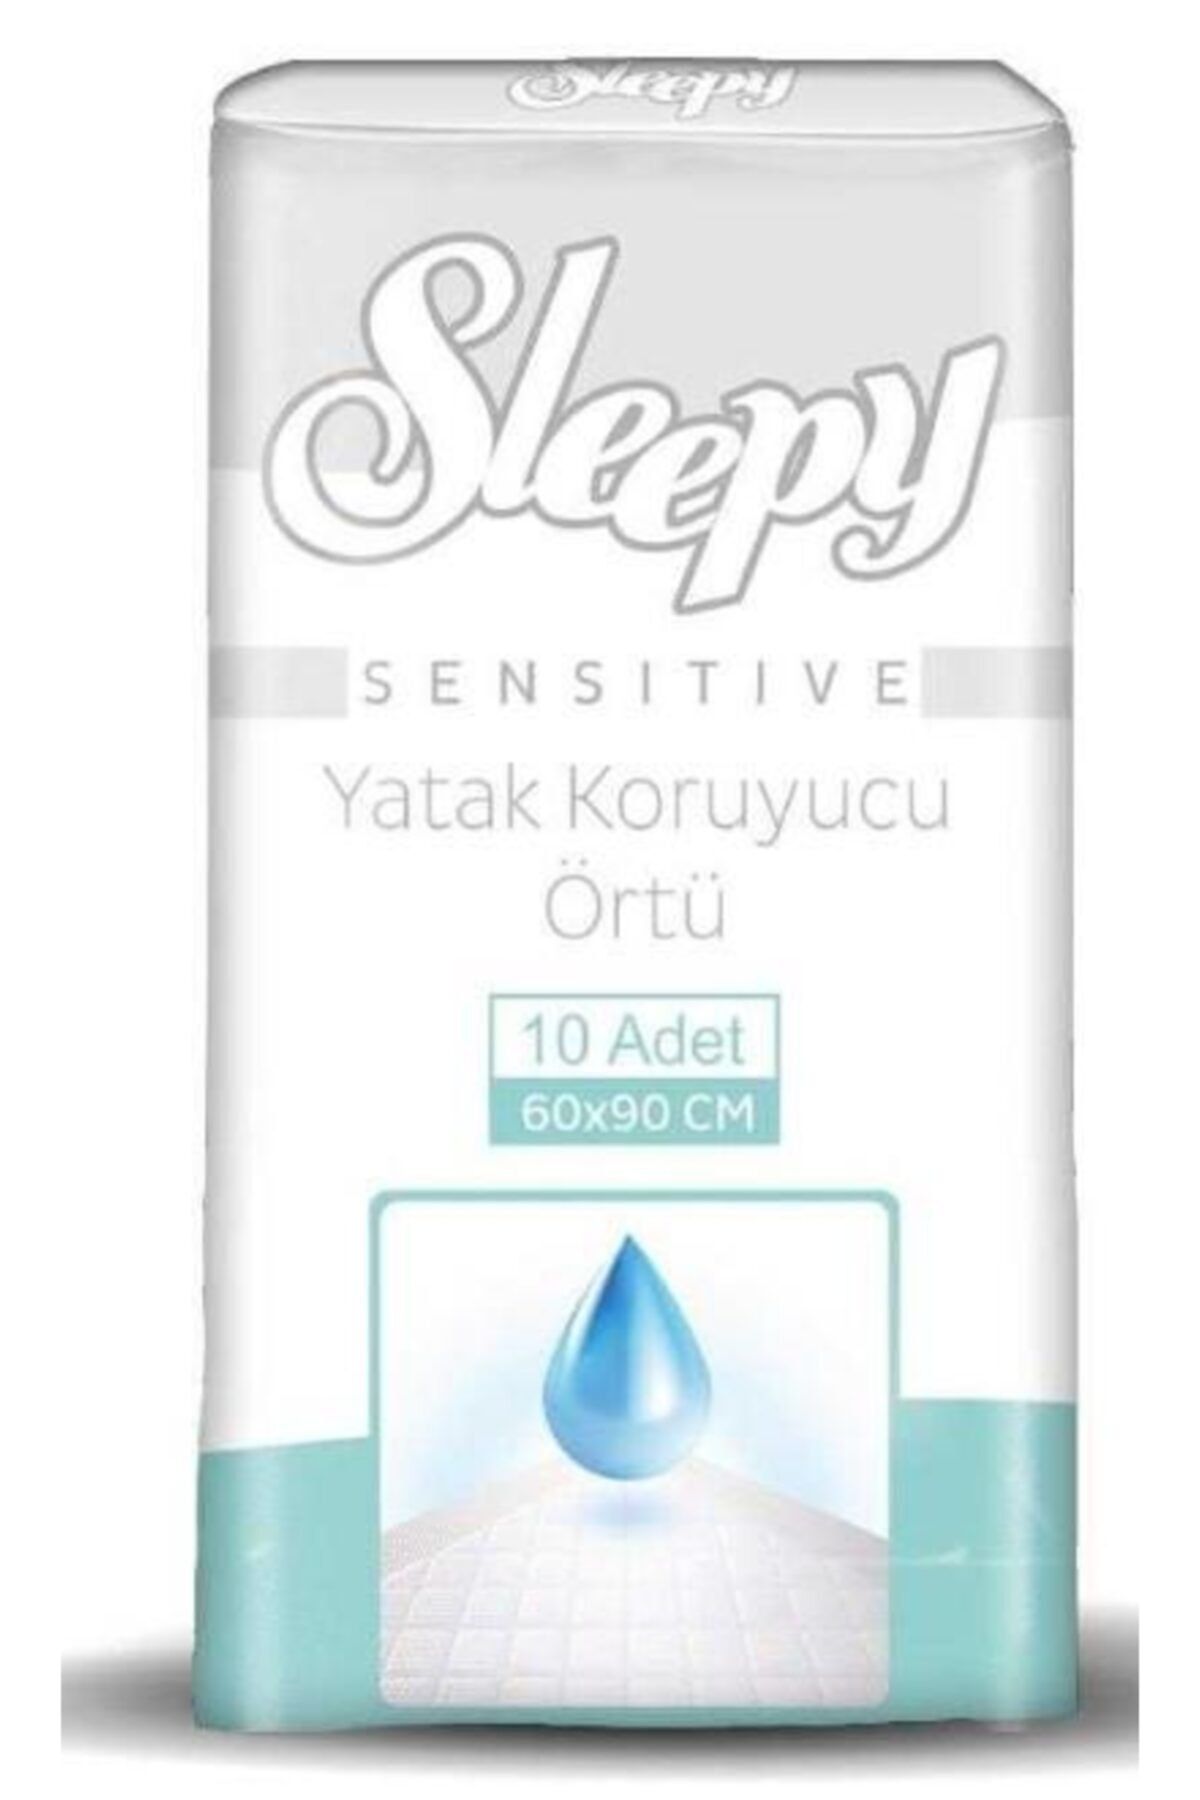 Sleepy Boze Sensitive Hasta Yatak Koruyucu 60x90 10 Adet